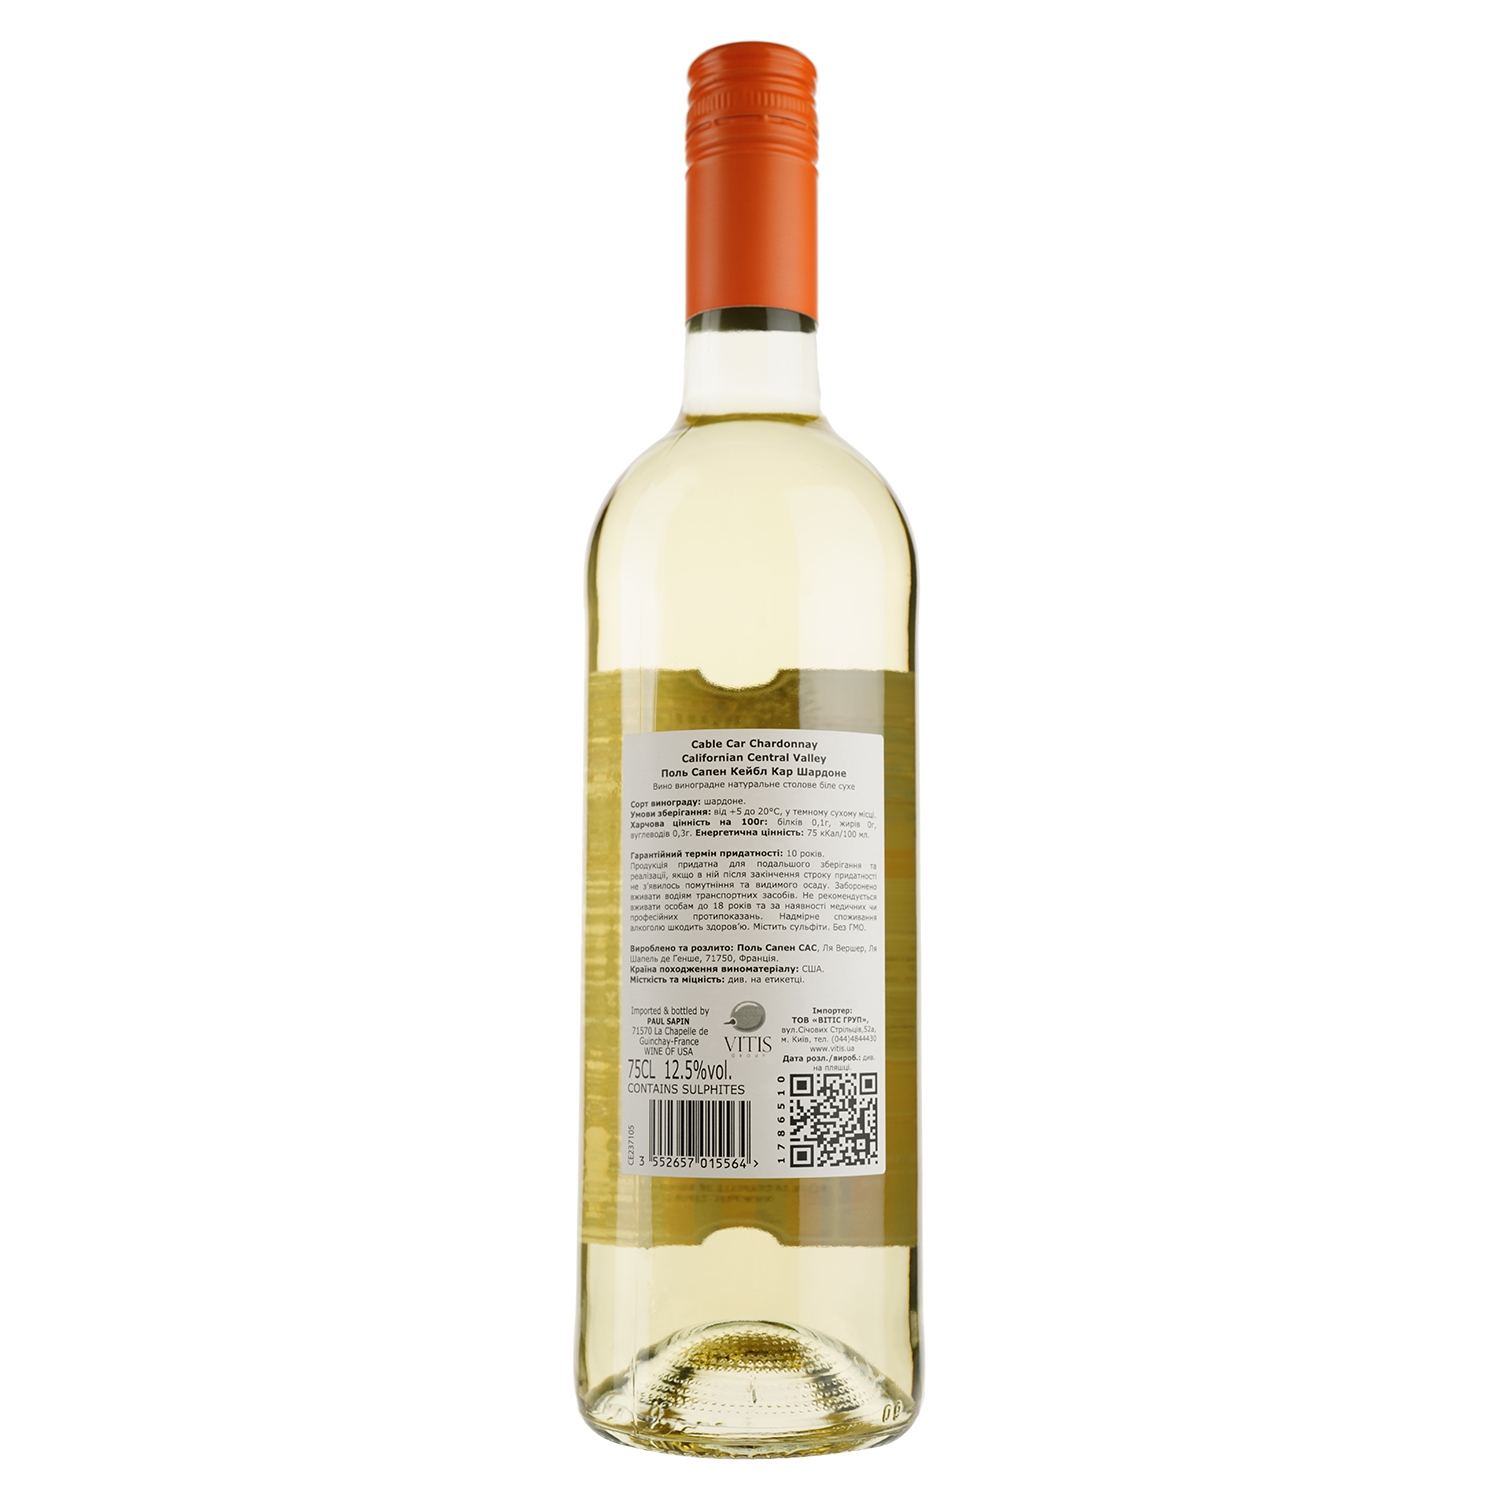 Вино Cable Car Chardonnay, белое, сухое, 13-15%, 0,75 л - фото 2